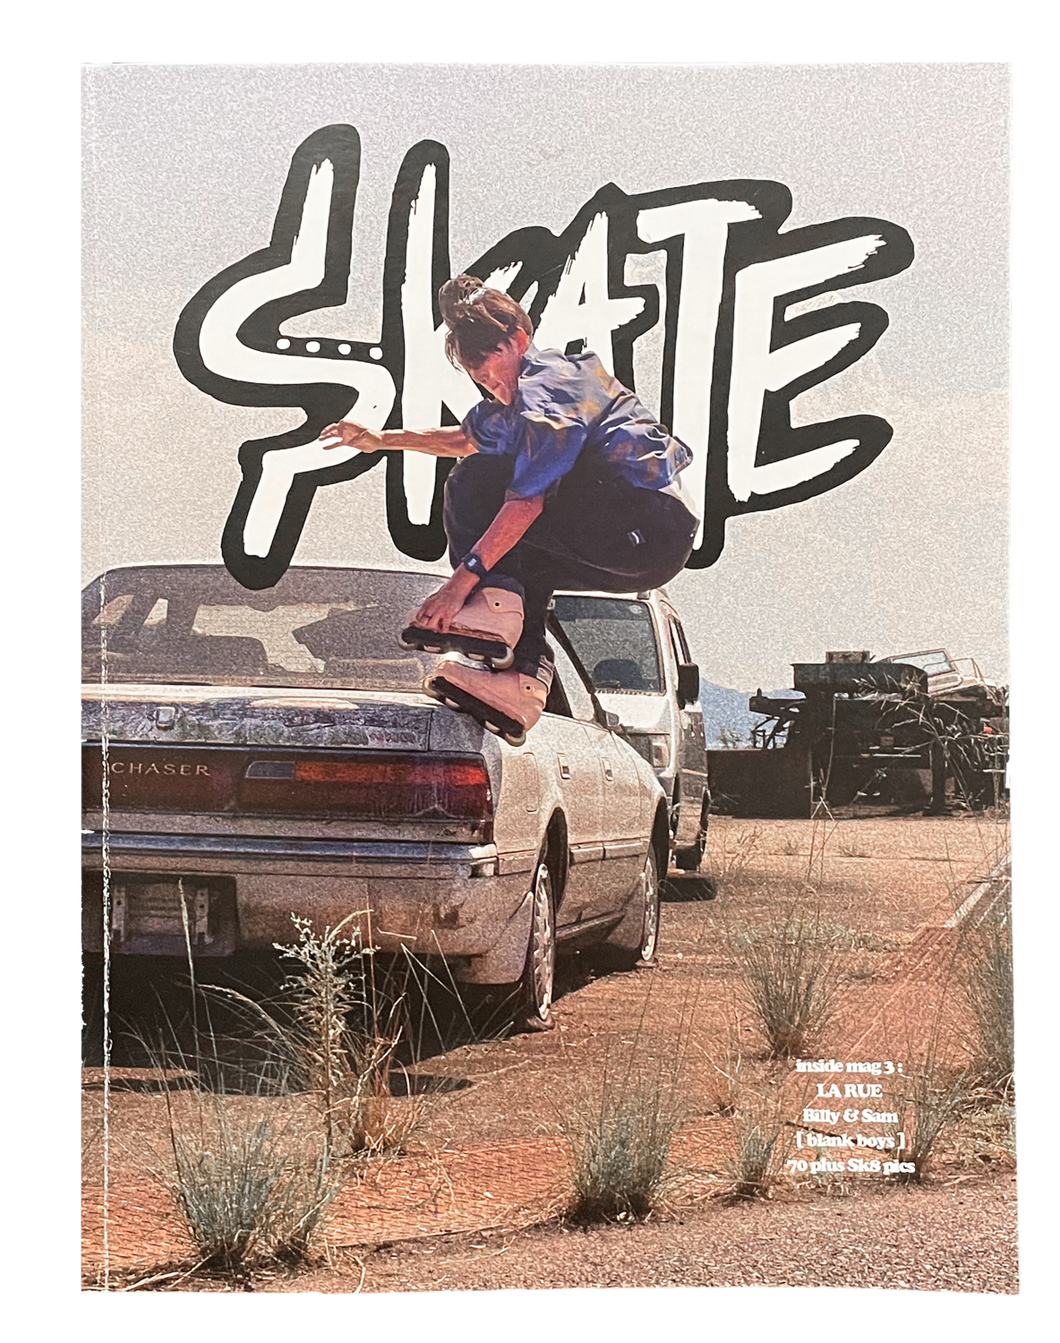 The Skate Company: Skate Magazine 3